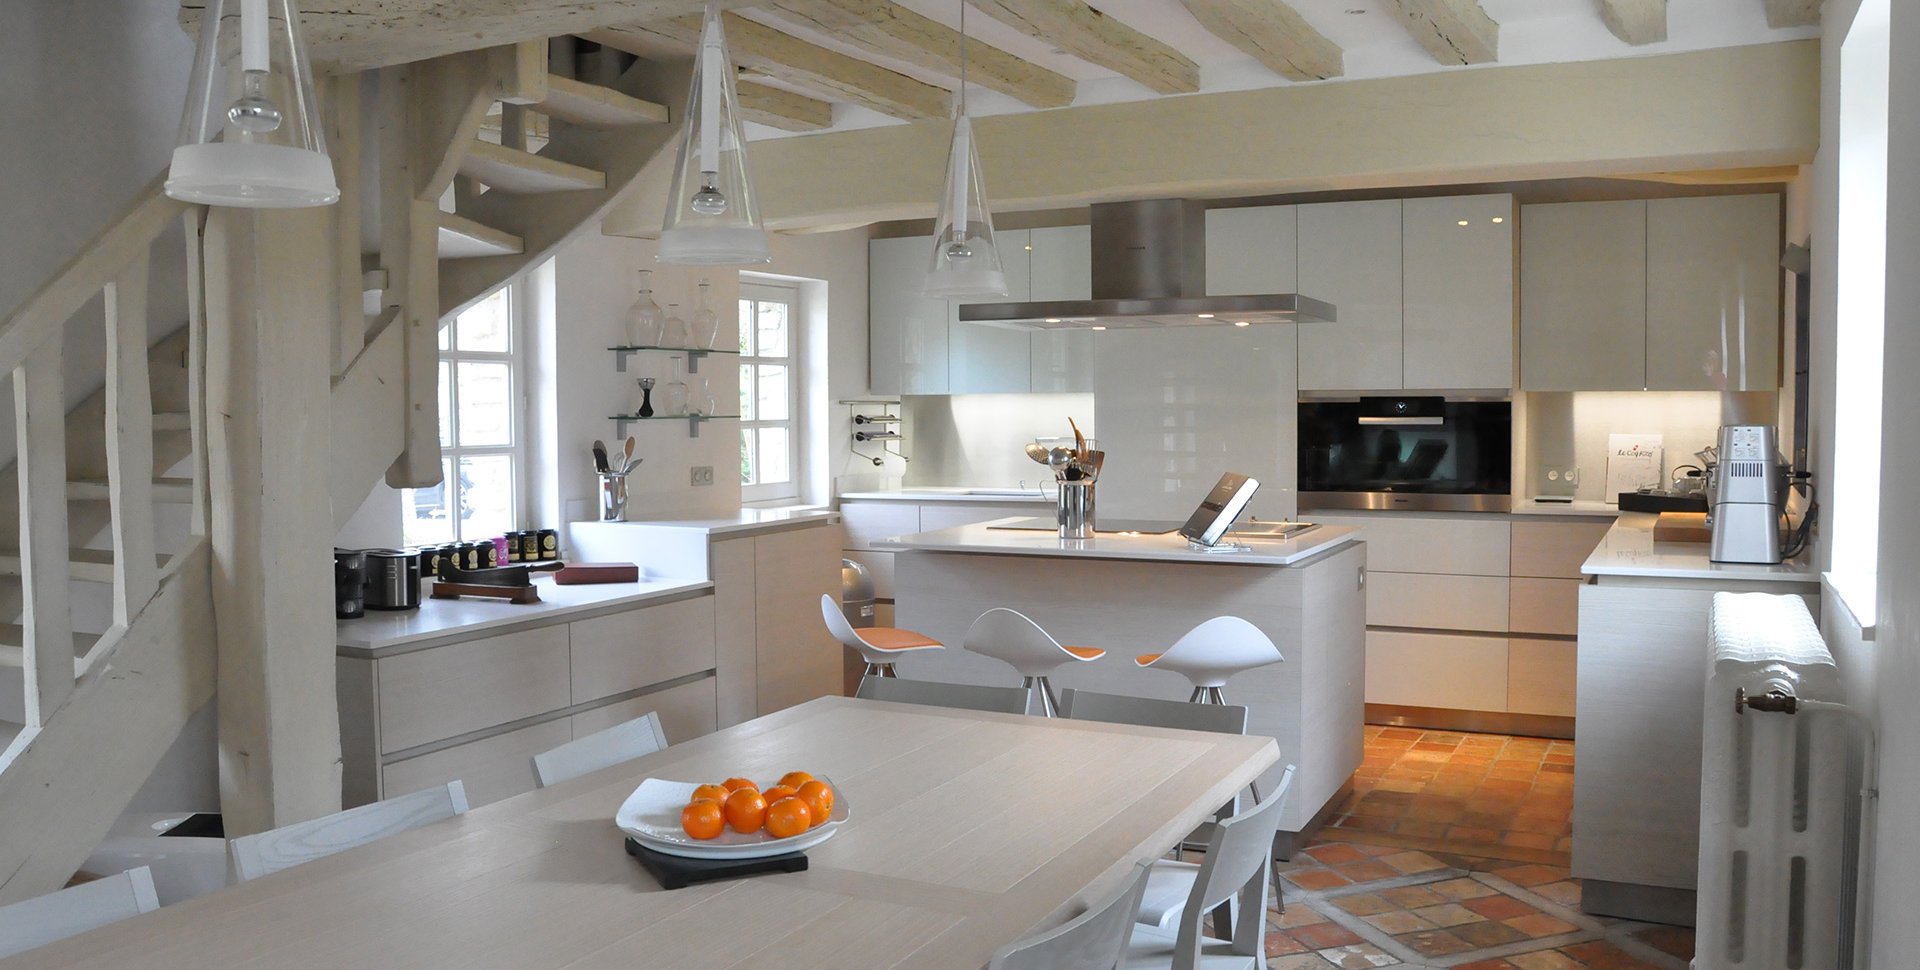 Réalisation d'une cuisine sur mesure d'un Cottage par l'agence Borella Art Design